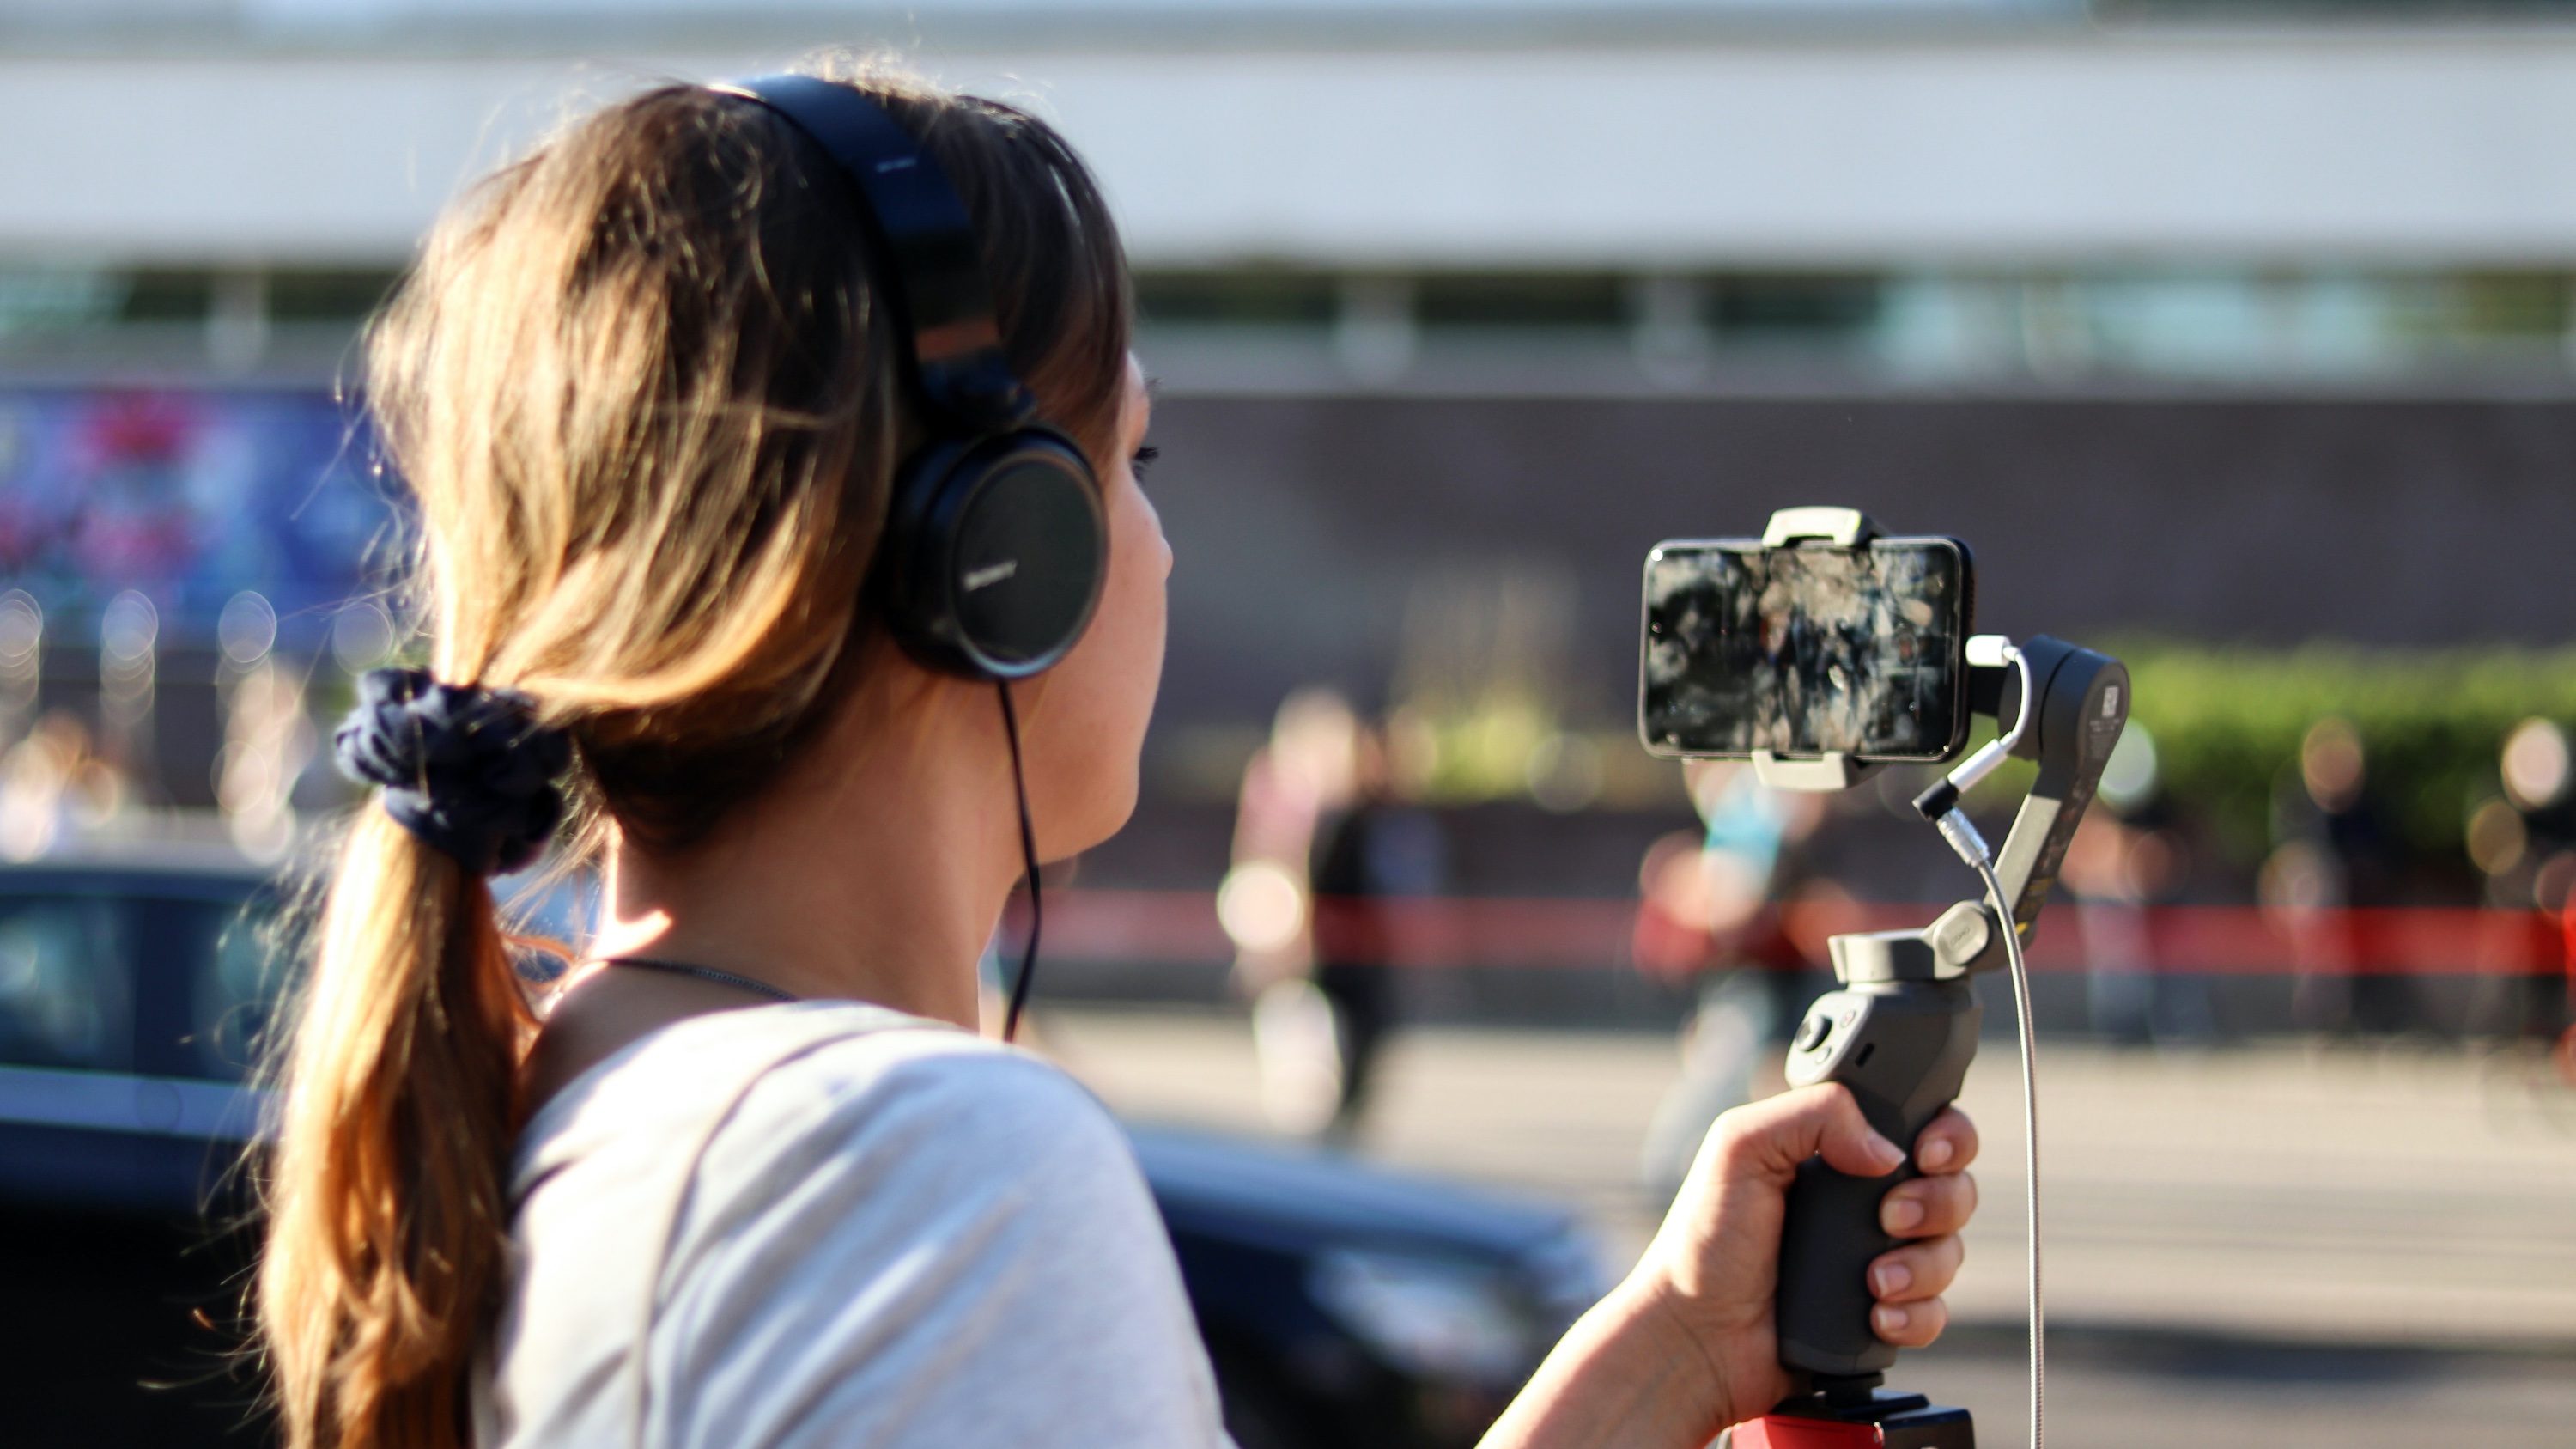 DJI Osmo Mobile 2, el palo de selfies con estabilizador - Vídeo